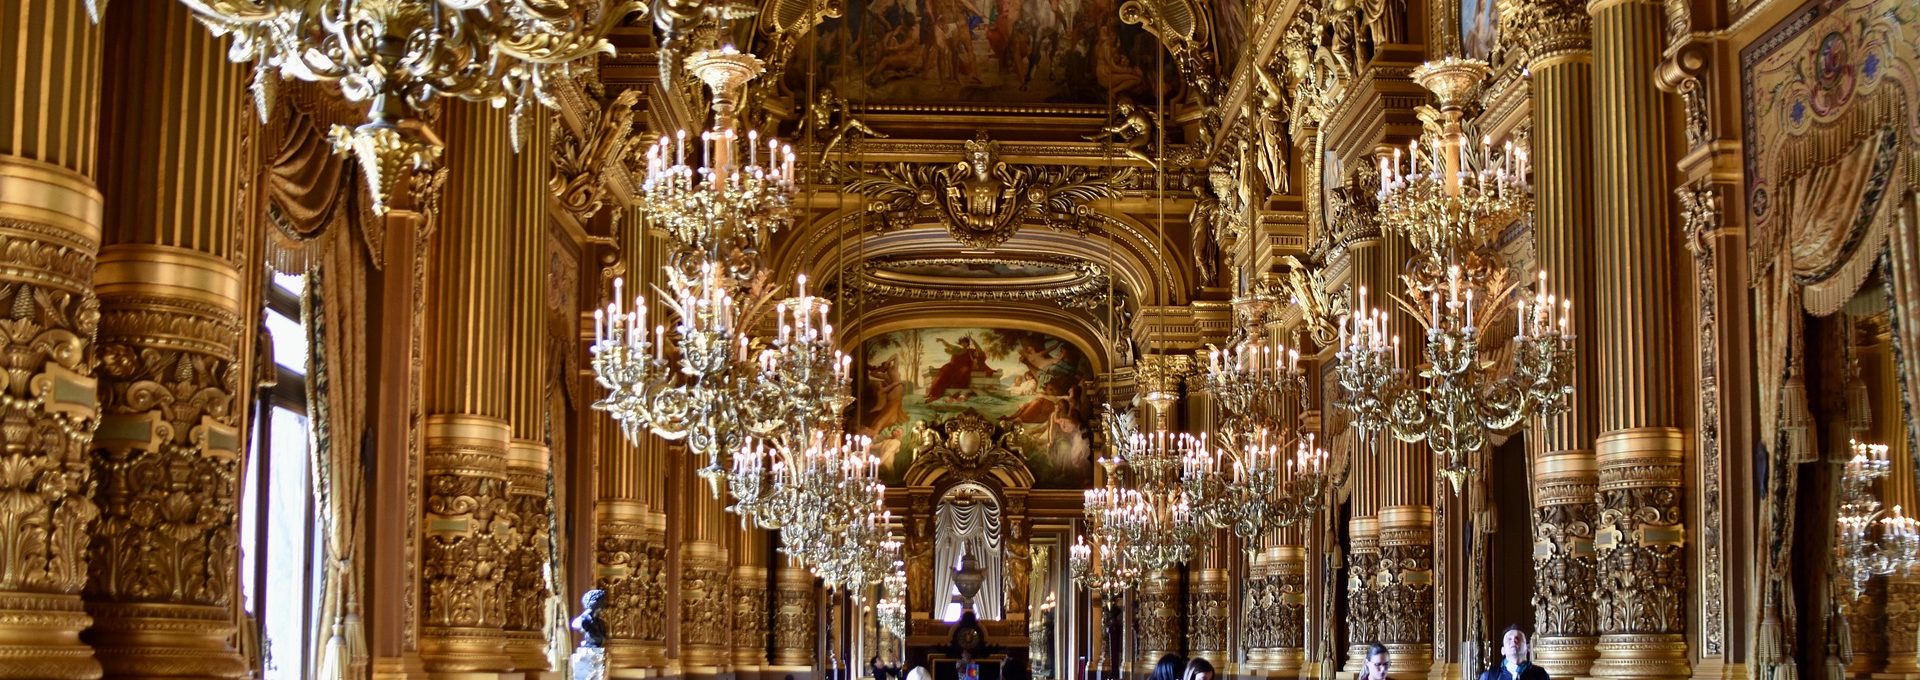 Interior da ópera Palais Garnier